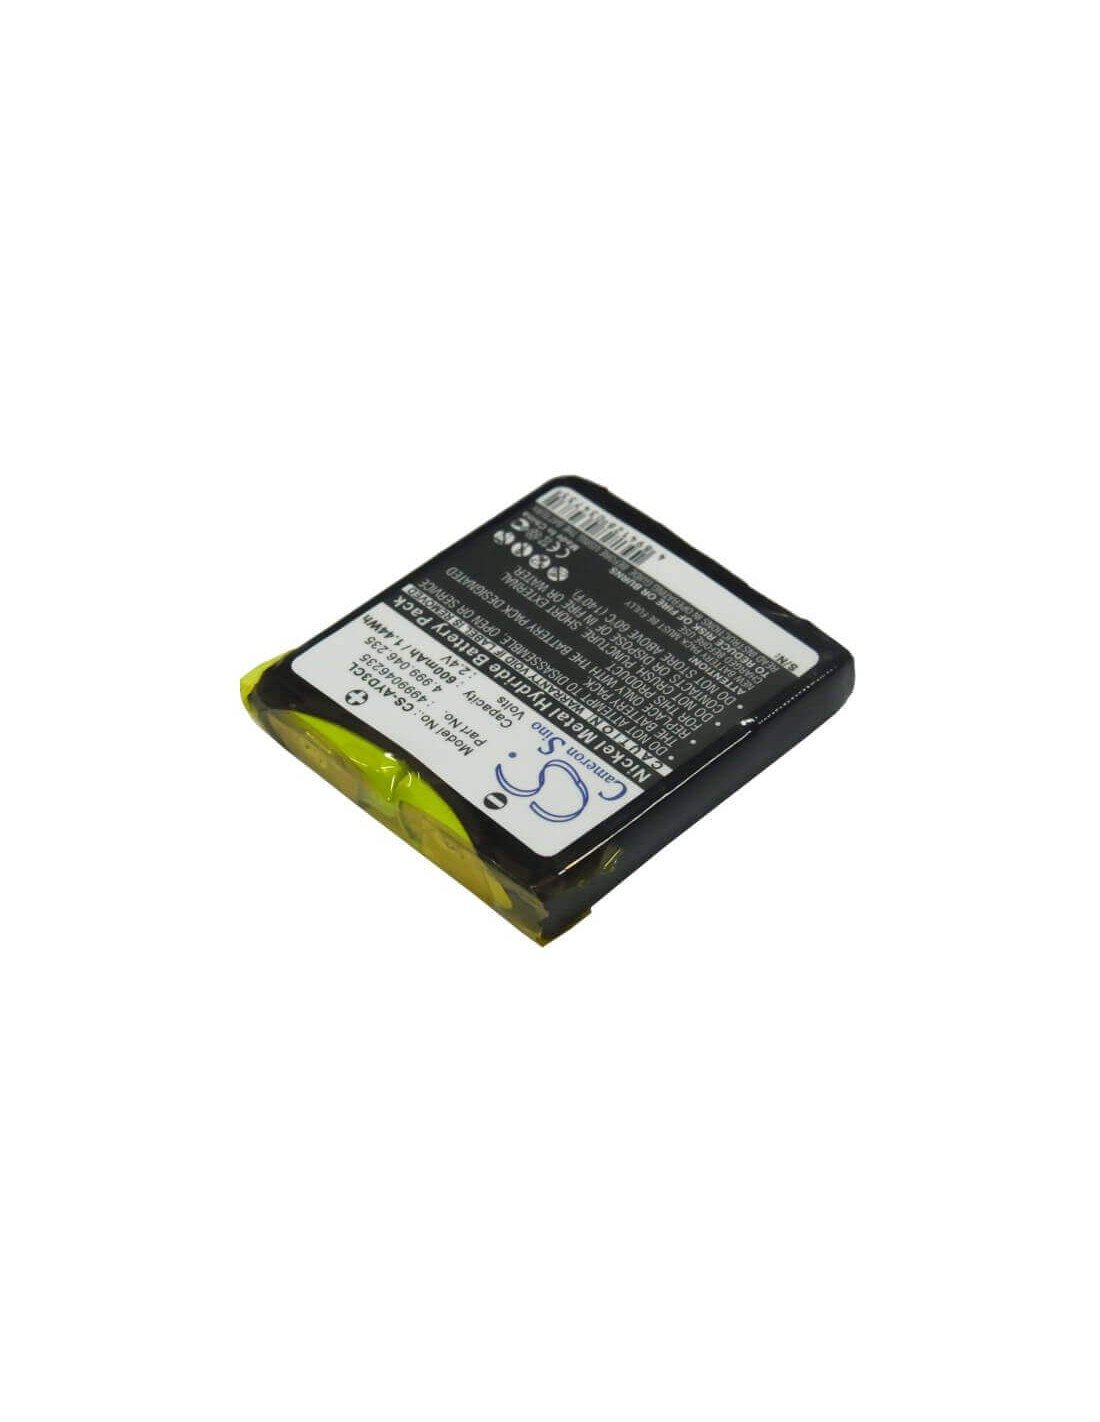 Battery for Detewe, Openphone 24, Openphone 28, 2.4V, 600mAh - 1.44Wh